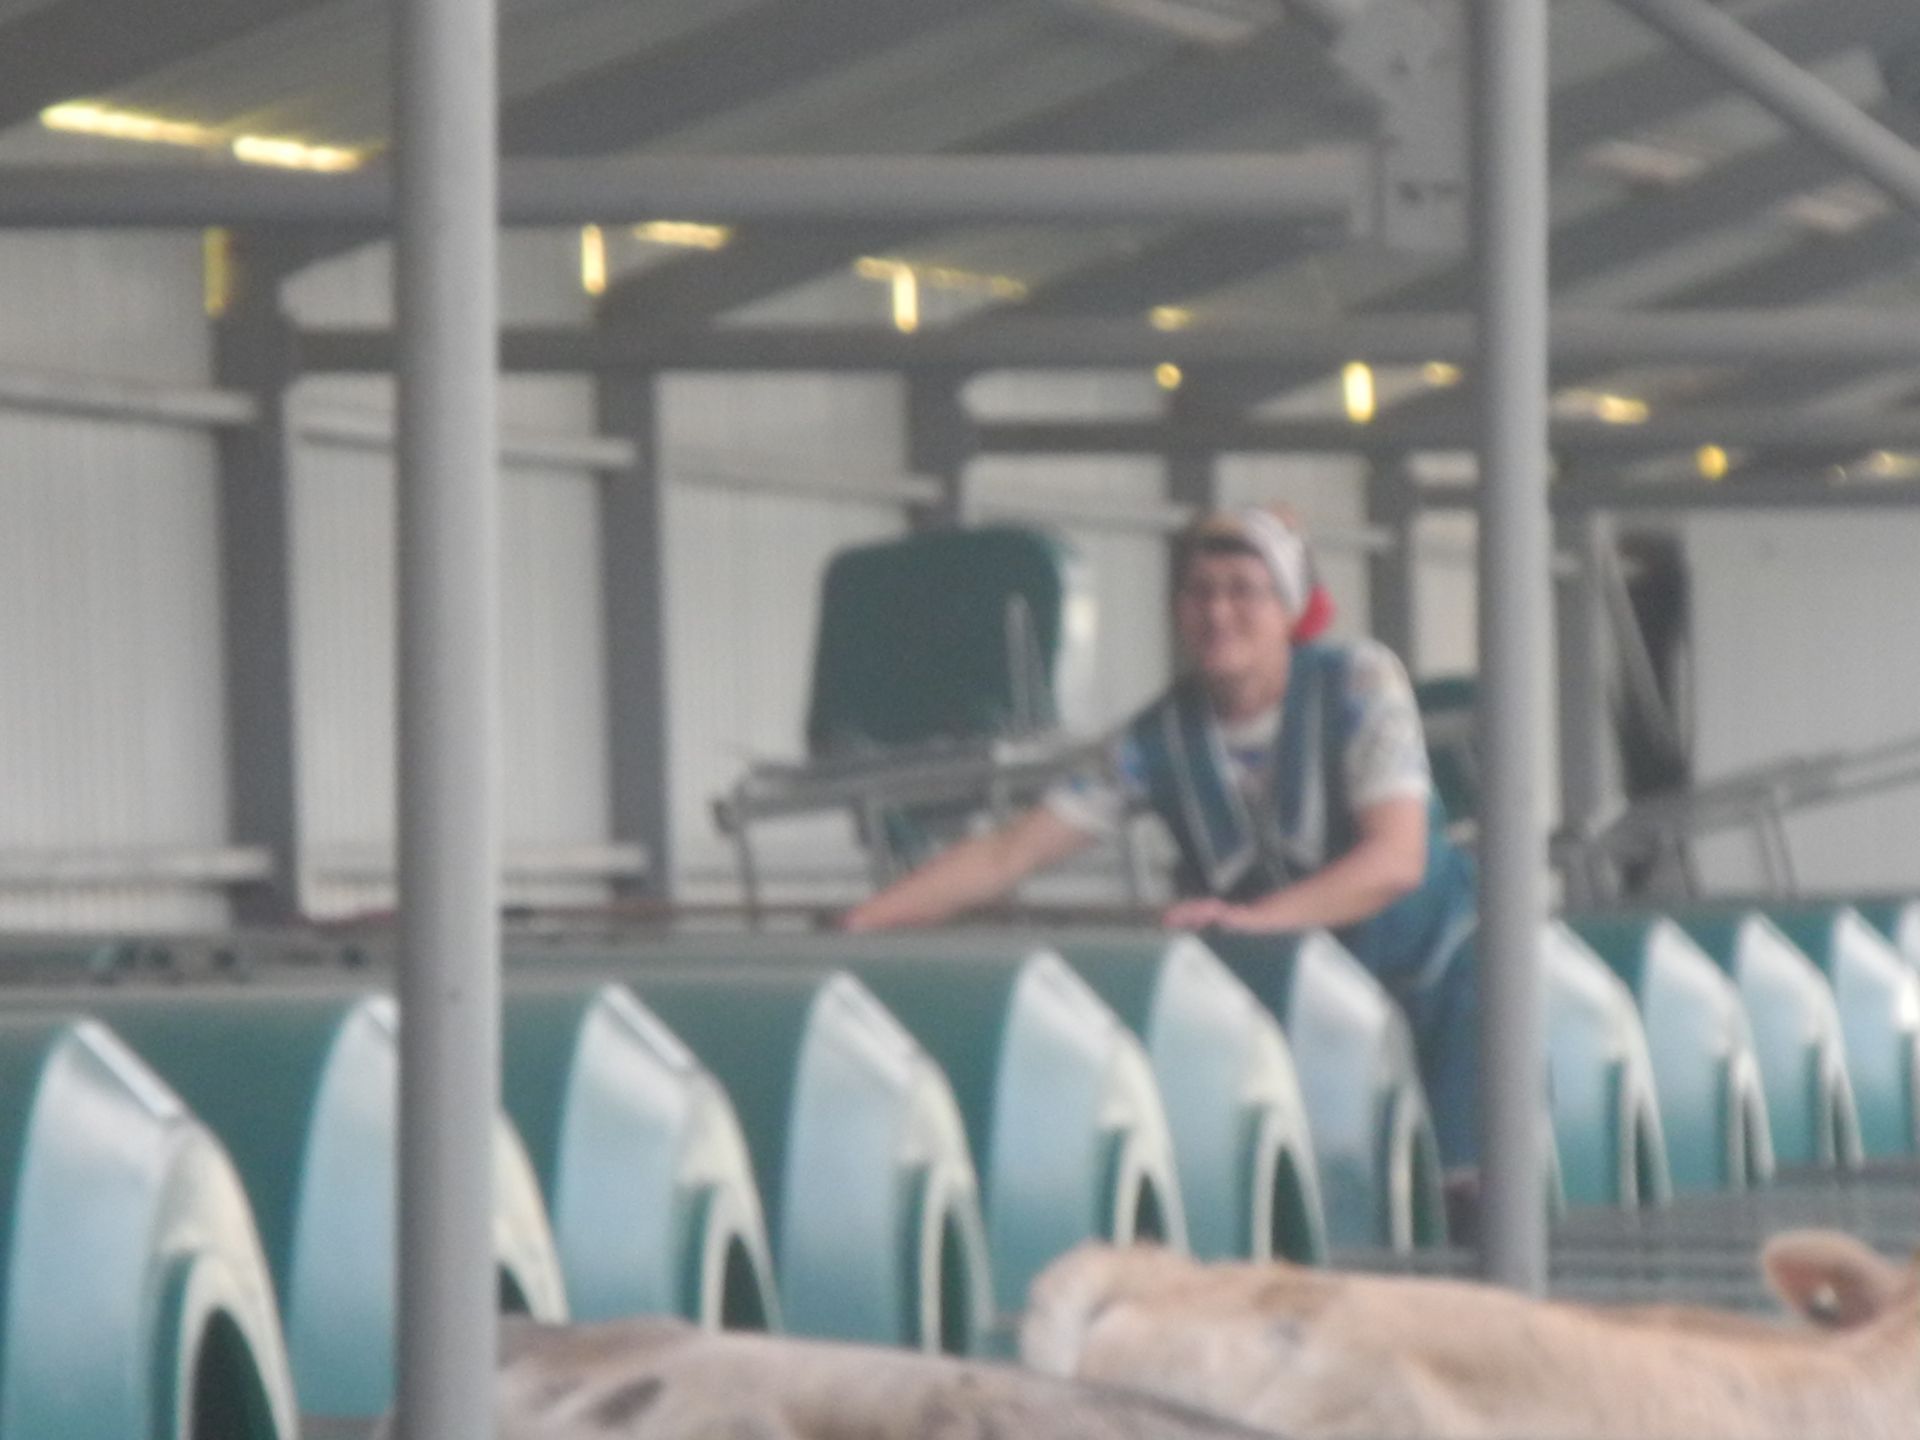 Работники животноводческого комплекса хозяйства "Кулон-Агро"  встречают Сабантуй с хорошими результатами труда